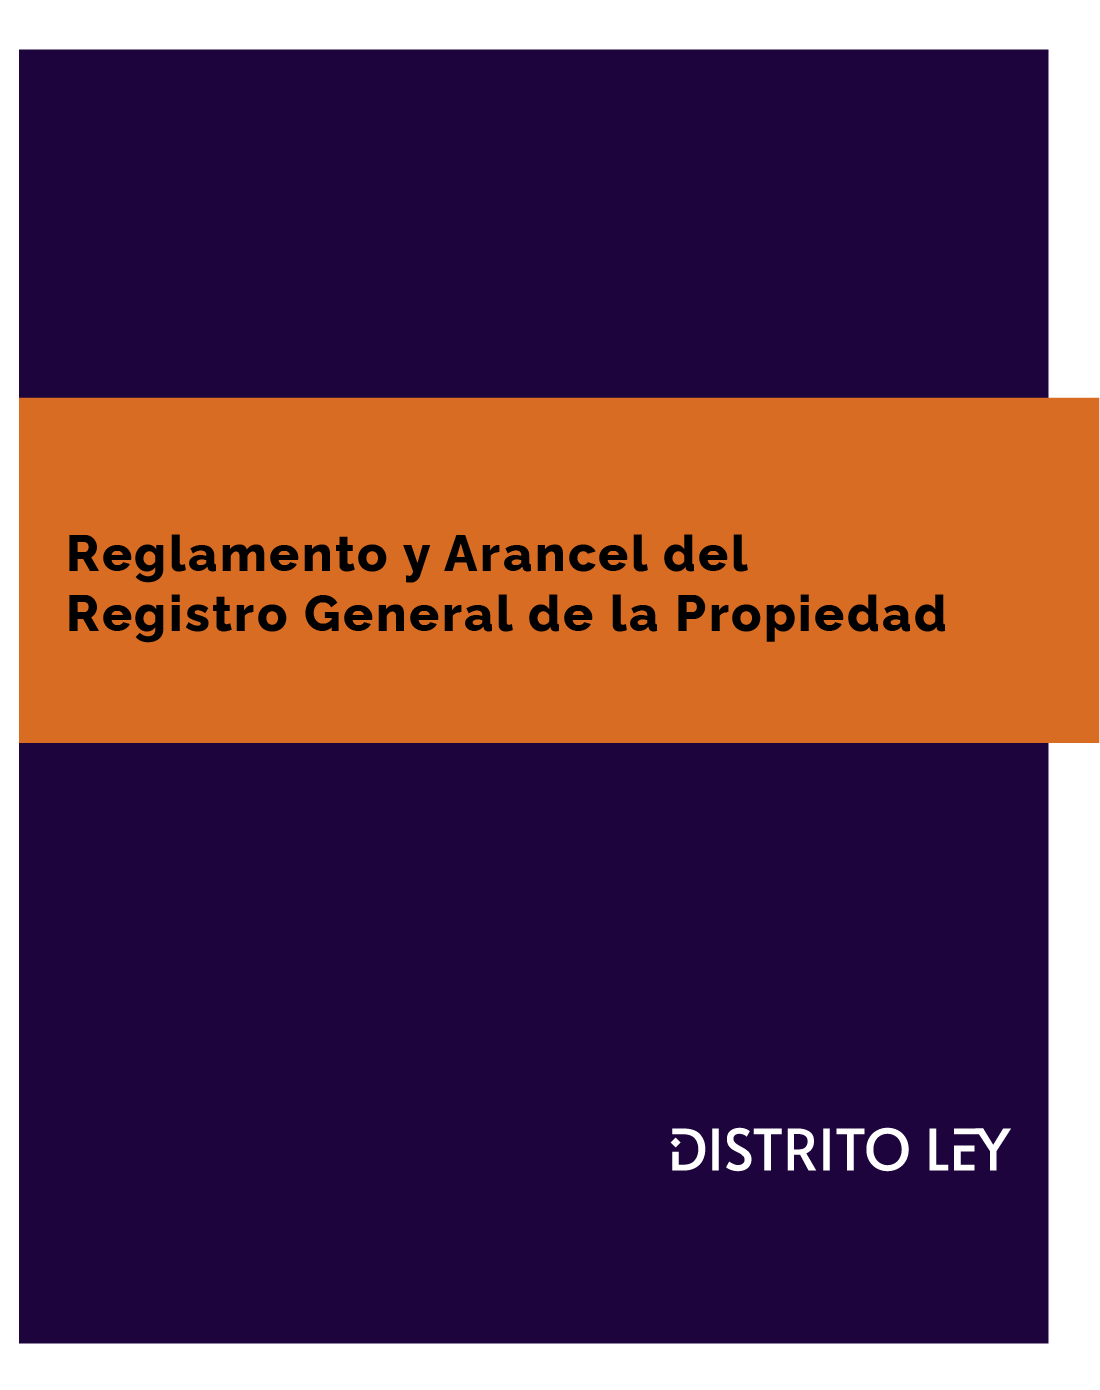 REGLAMENTO DEL REGISTRO GENERAL DE LA PROPIEDAD